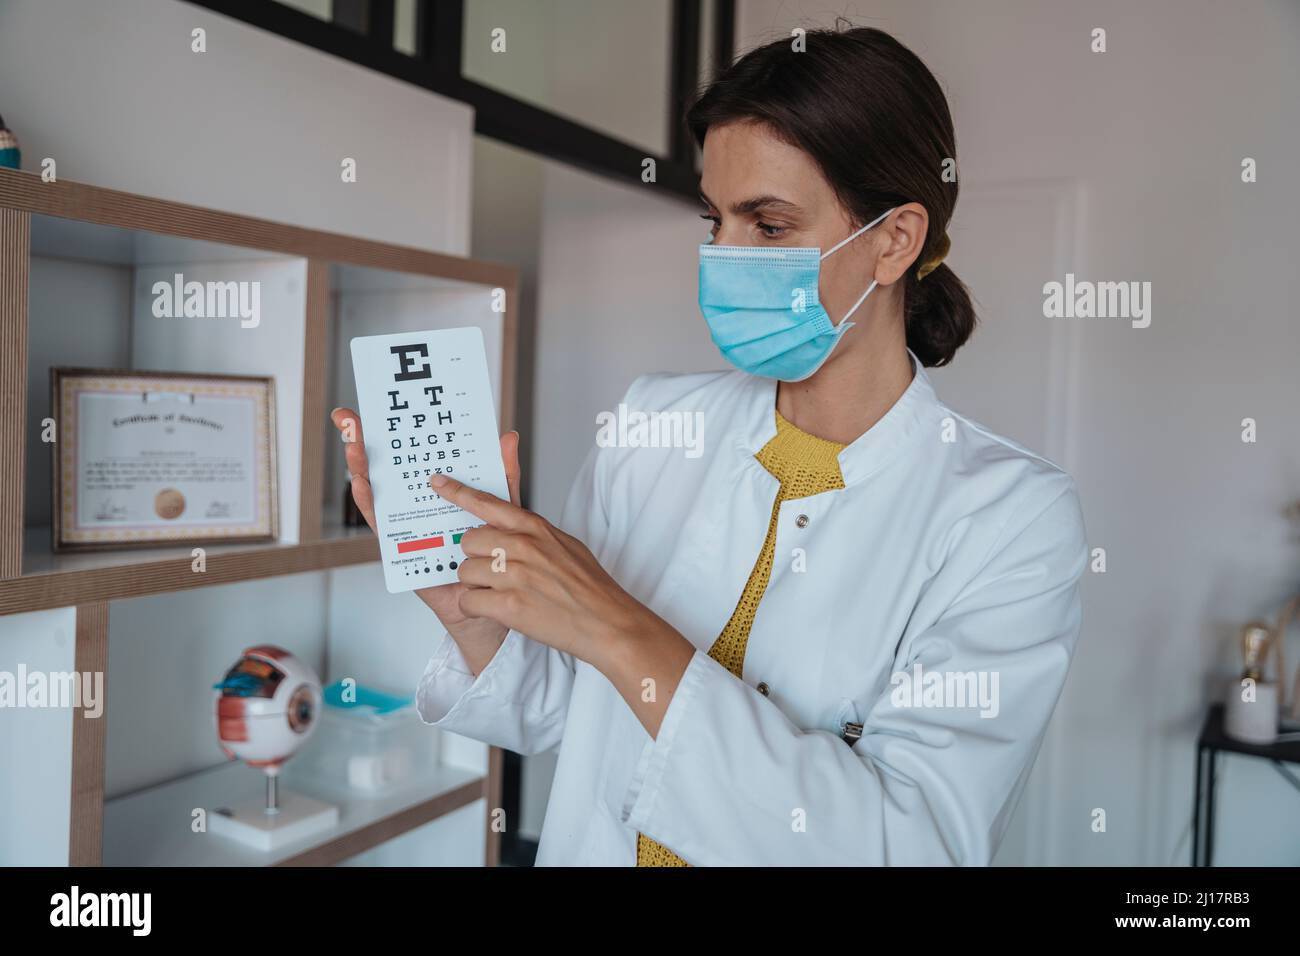 Medico con maschera protettiva che mostra il diagramma degli occhi in clinica Foto Stock